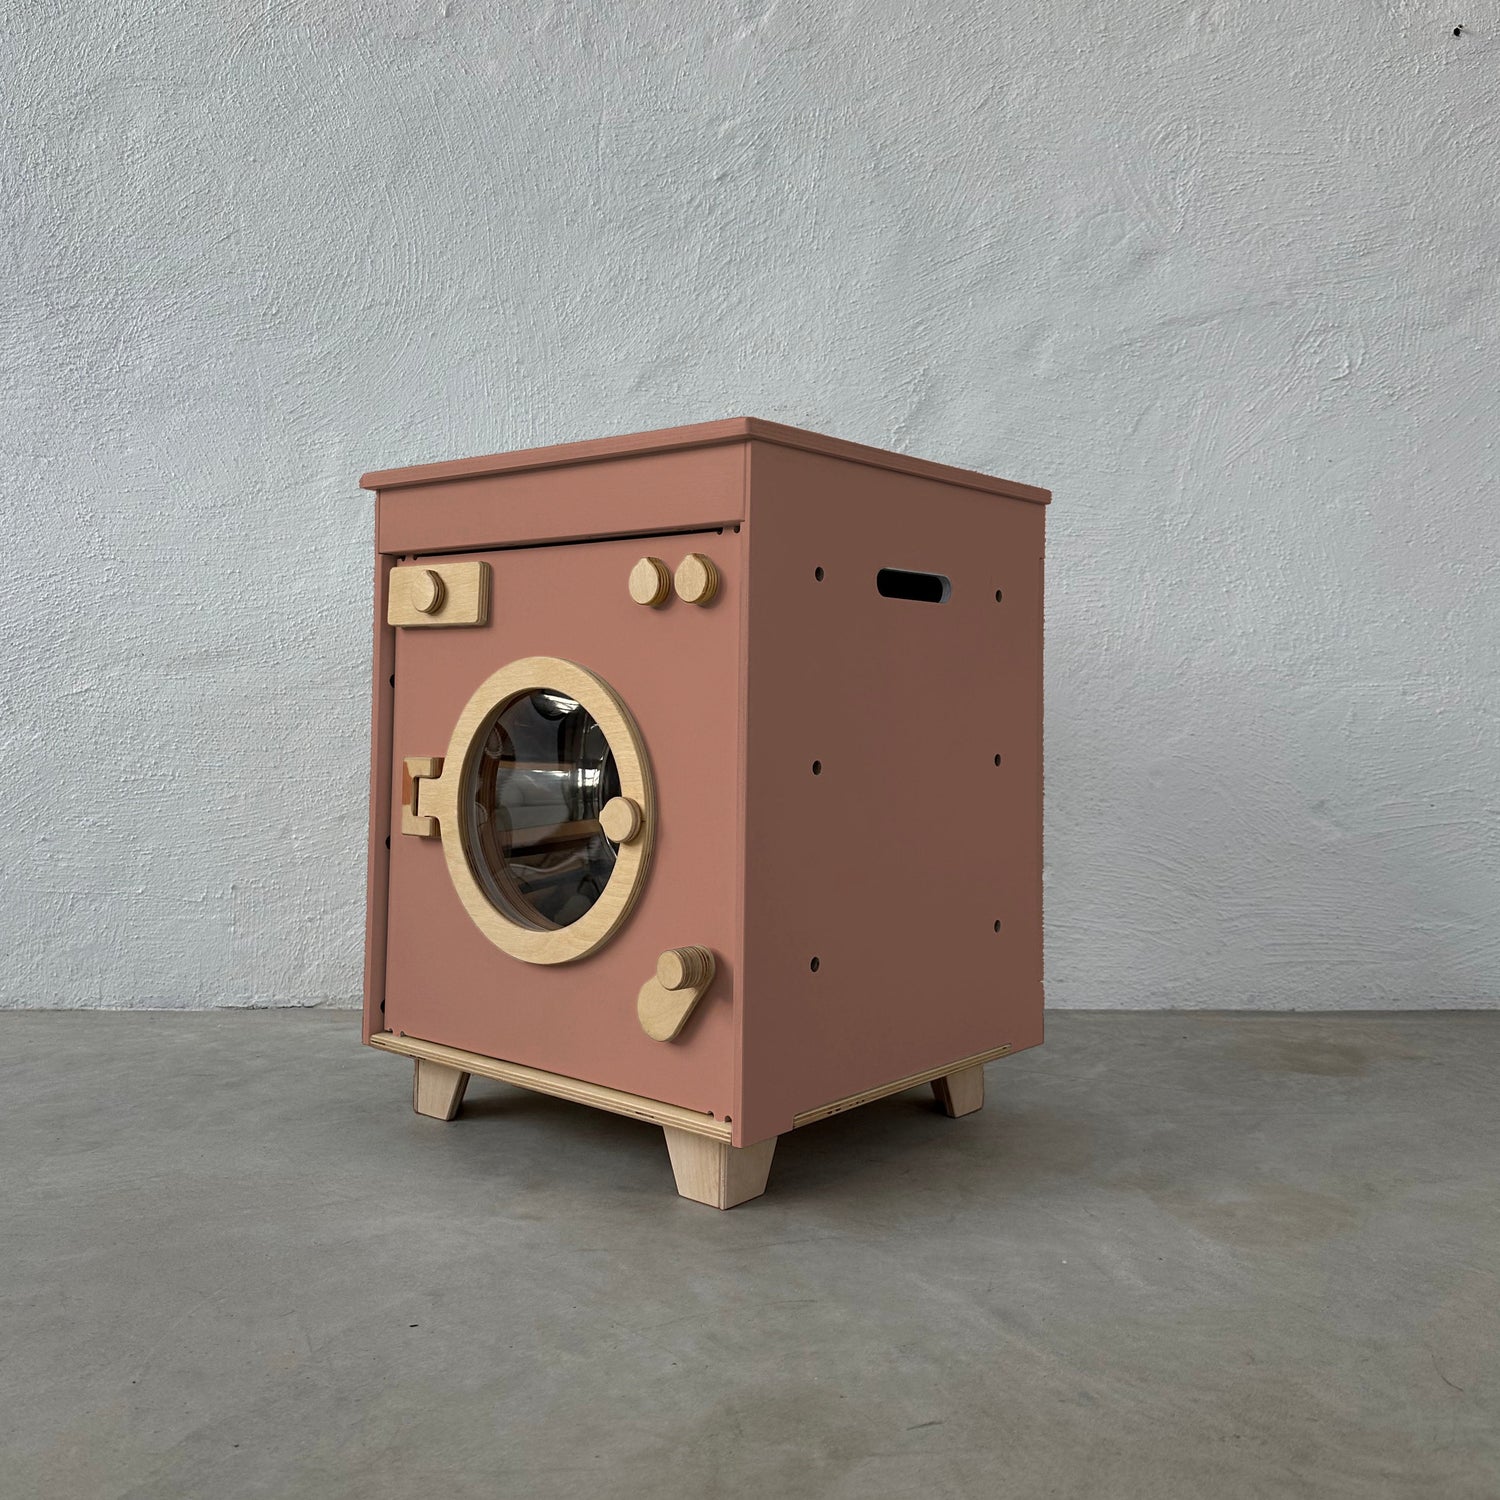 Wooden Washing Machine